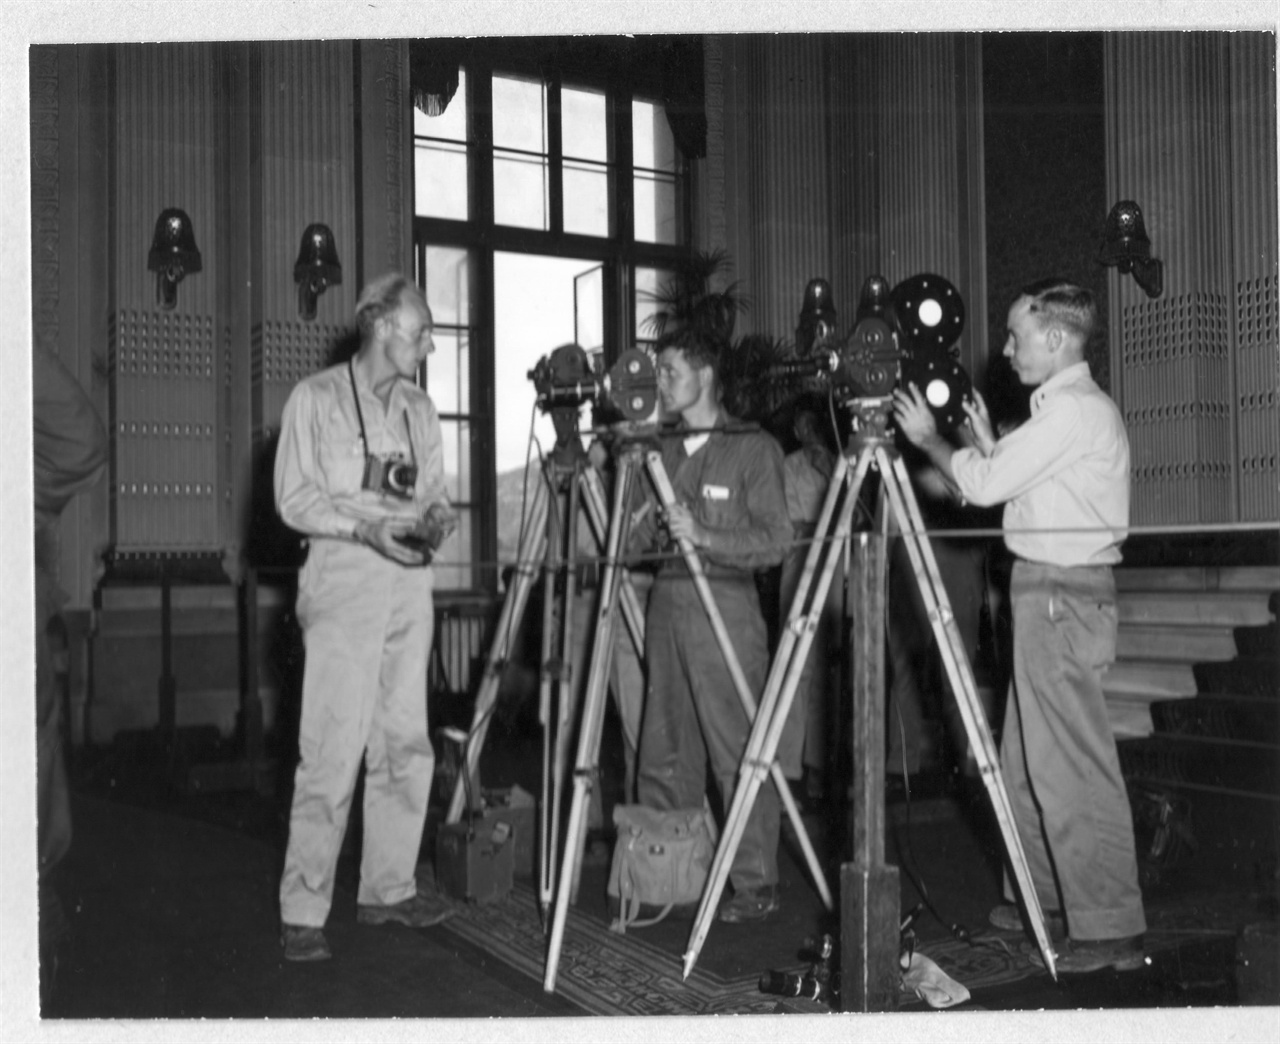  1945. 9. 9. 조선총독부 제1회의실에서 열린 일본항복 조인식을 미군 측 카메라맨들이 
촬영하고 있다.